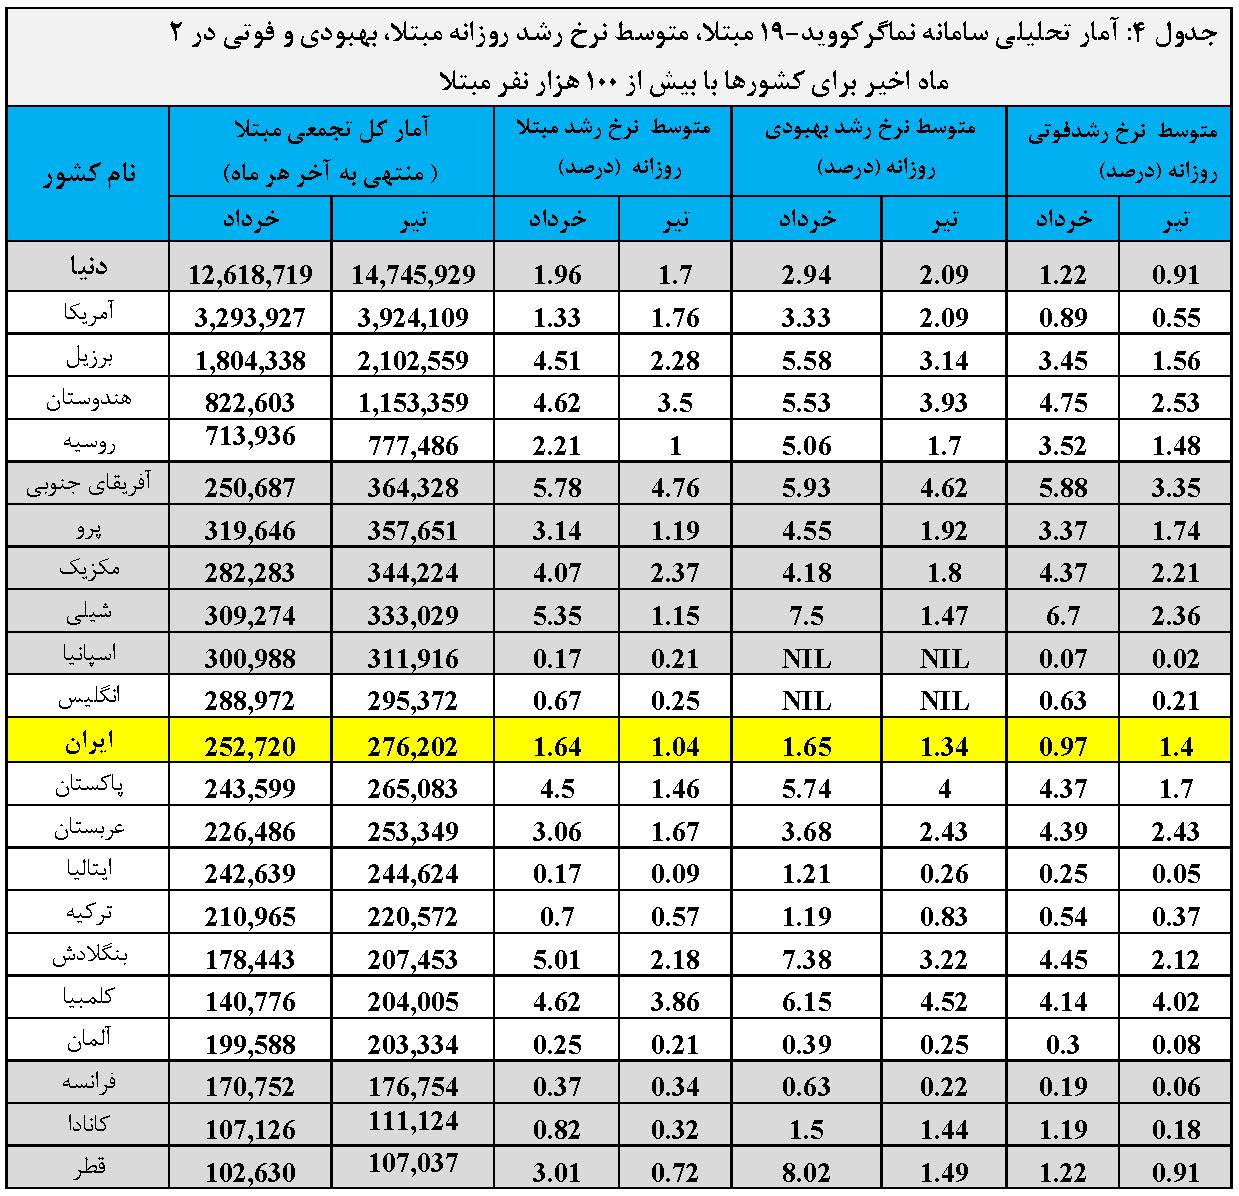 گزارش تحلیلی سامانه نماگر کووید-19 ISC در دنیا و ایران در 4 ماه اخیر